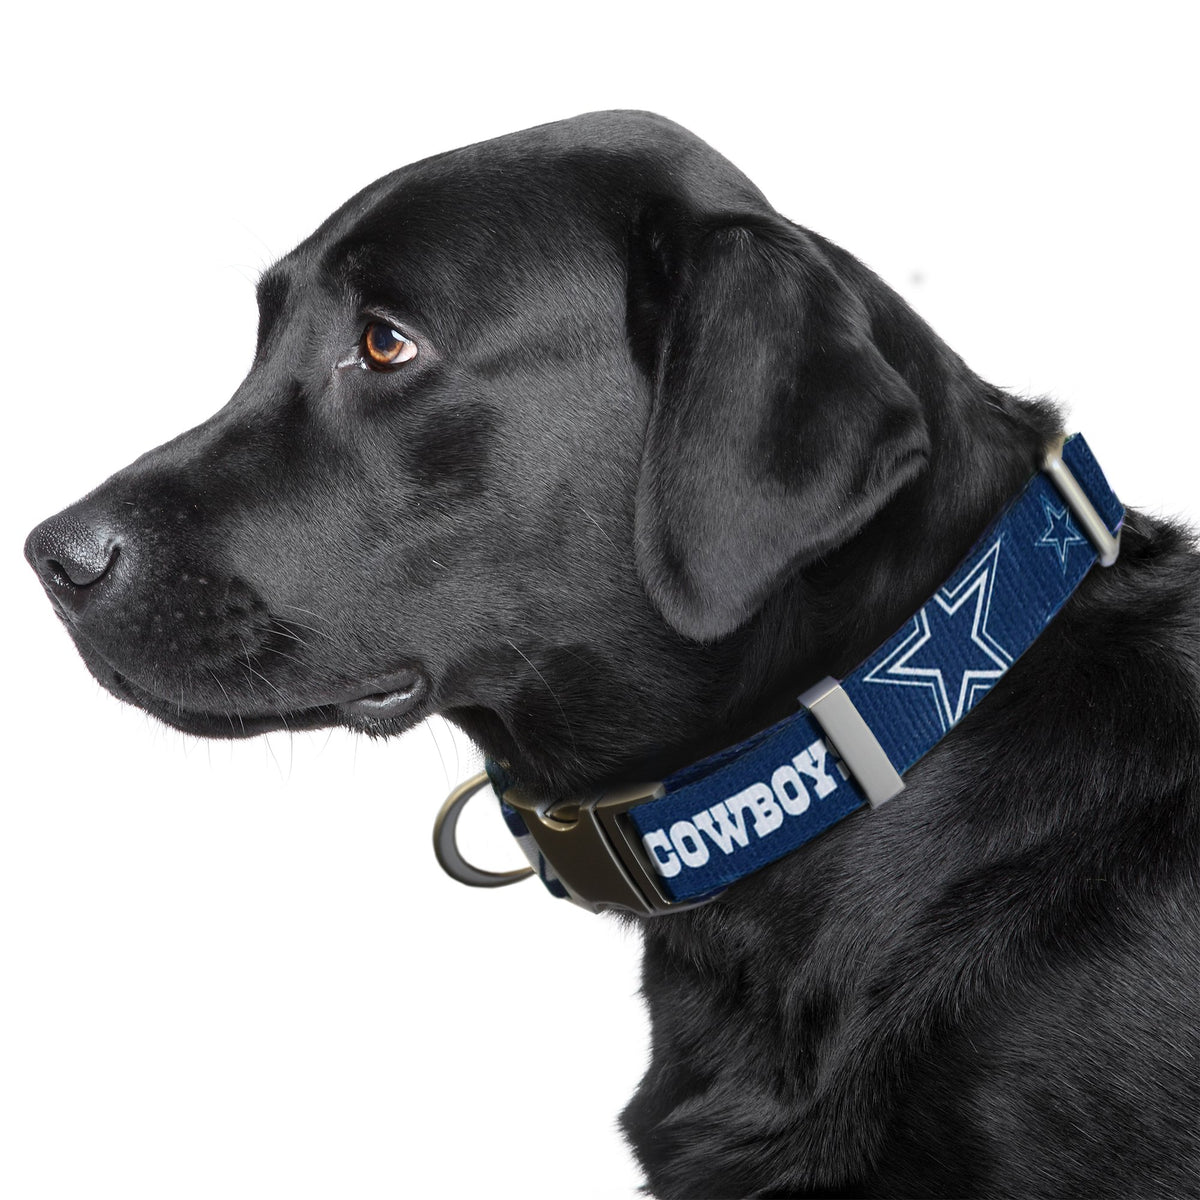  MLB SAINT LOUIS CARDINALS Dog Collar, Large : Sports